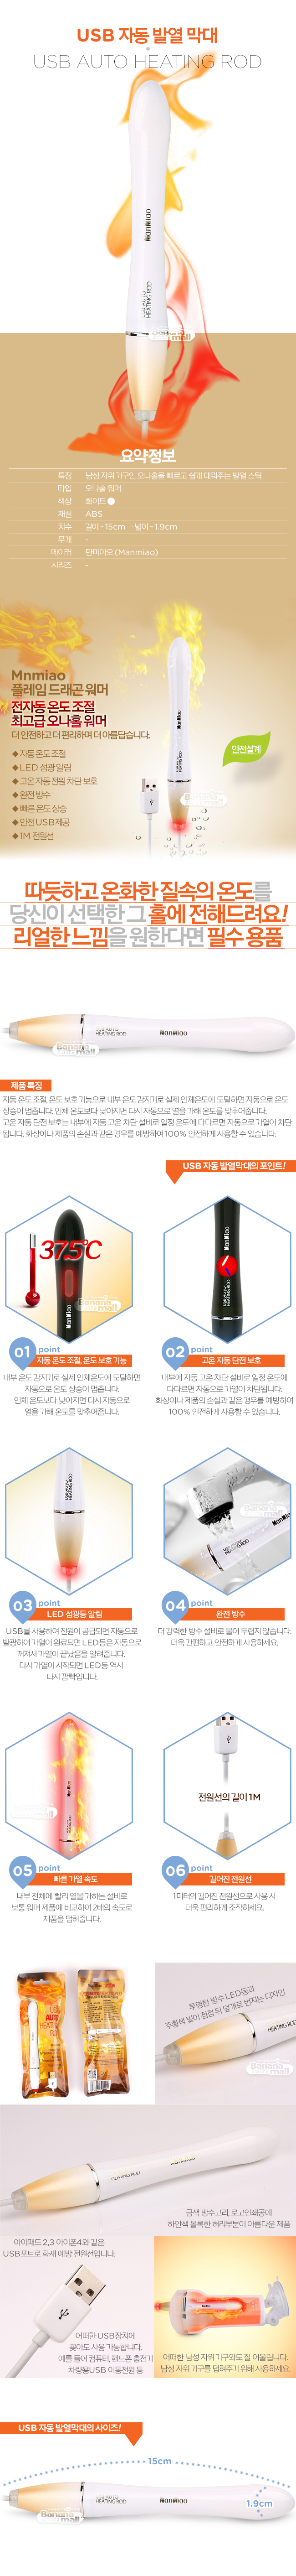 [발열기] USB 자동 발열막대(USB Auto Heating Rod) - 6957361300192